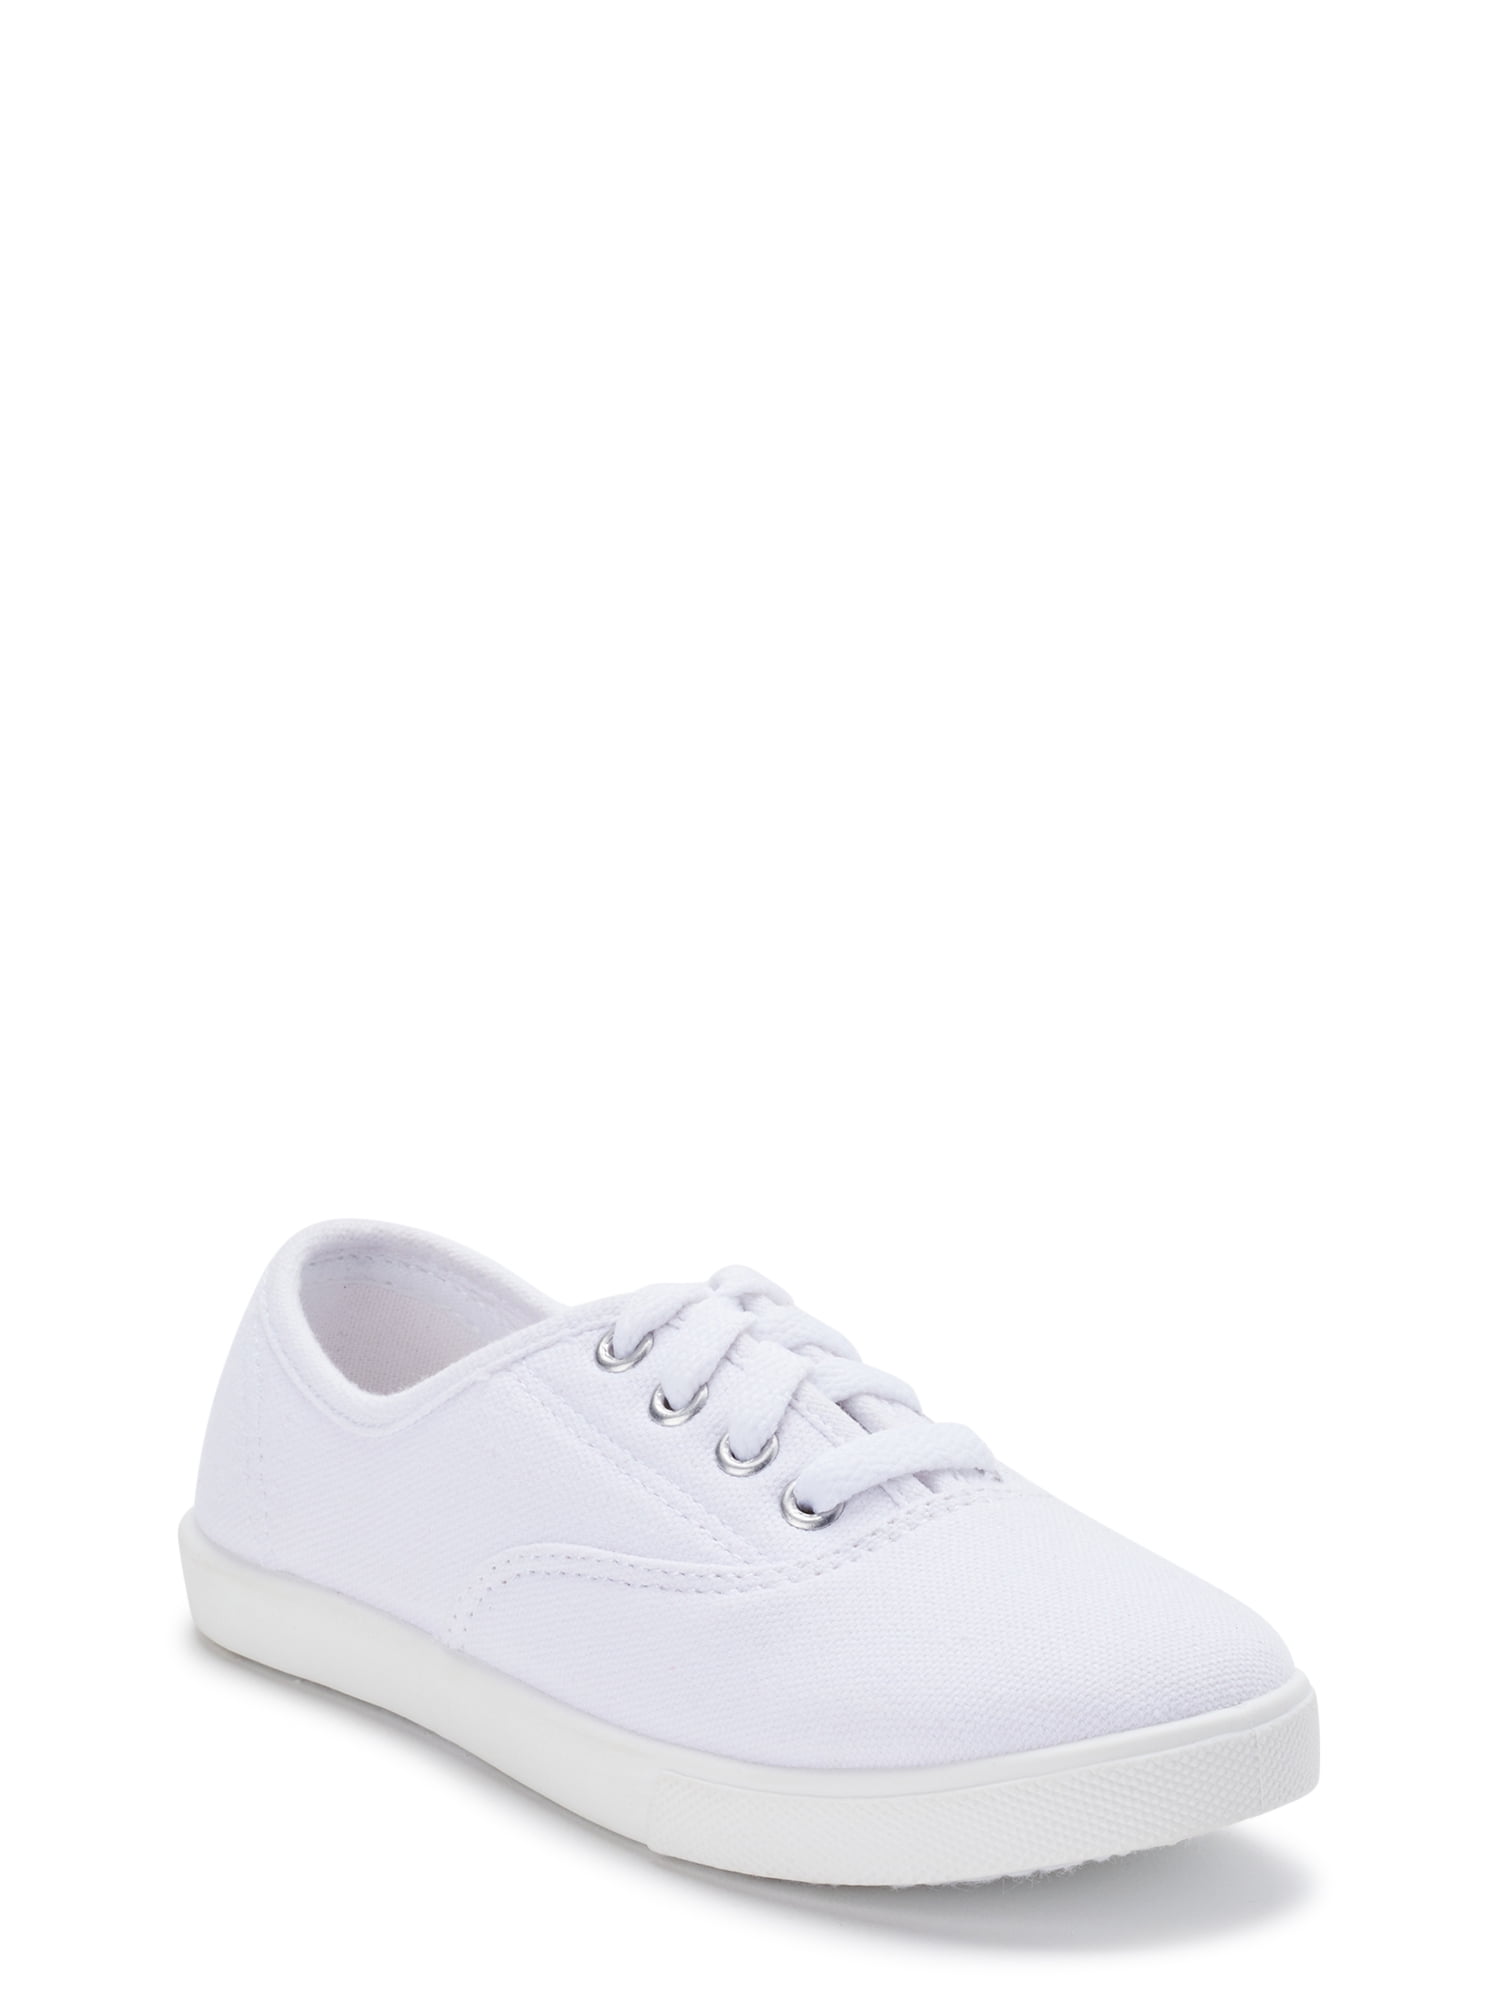 walmart white shoes